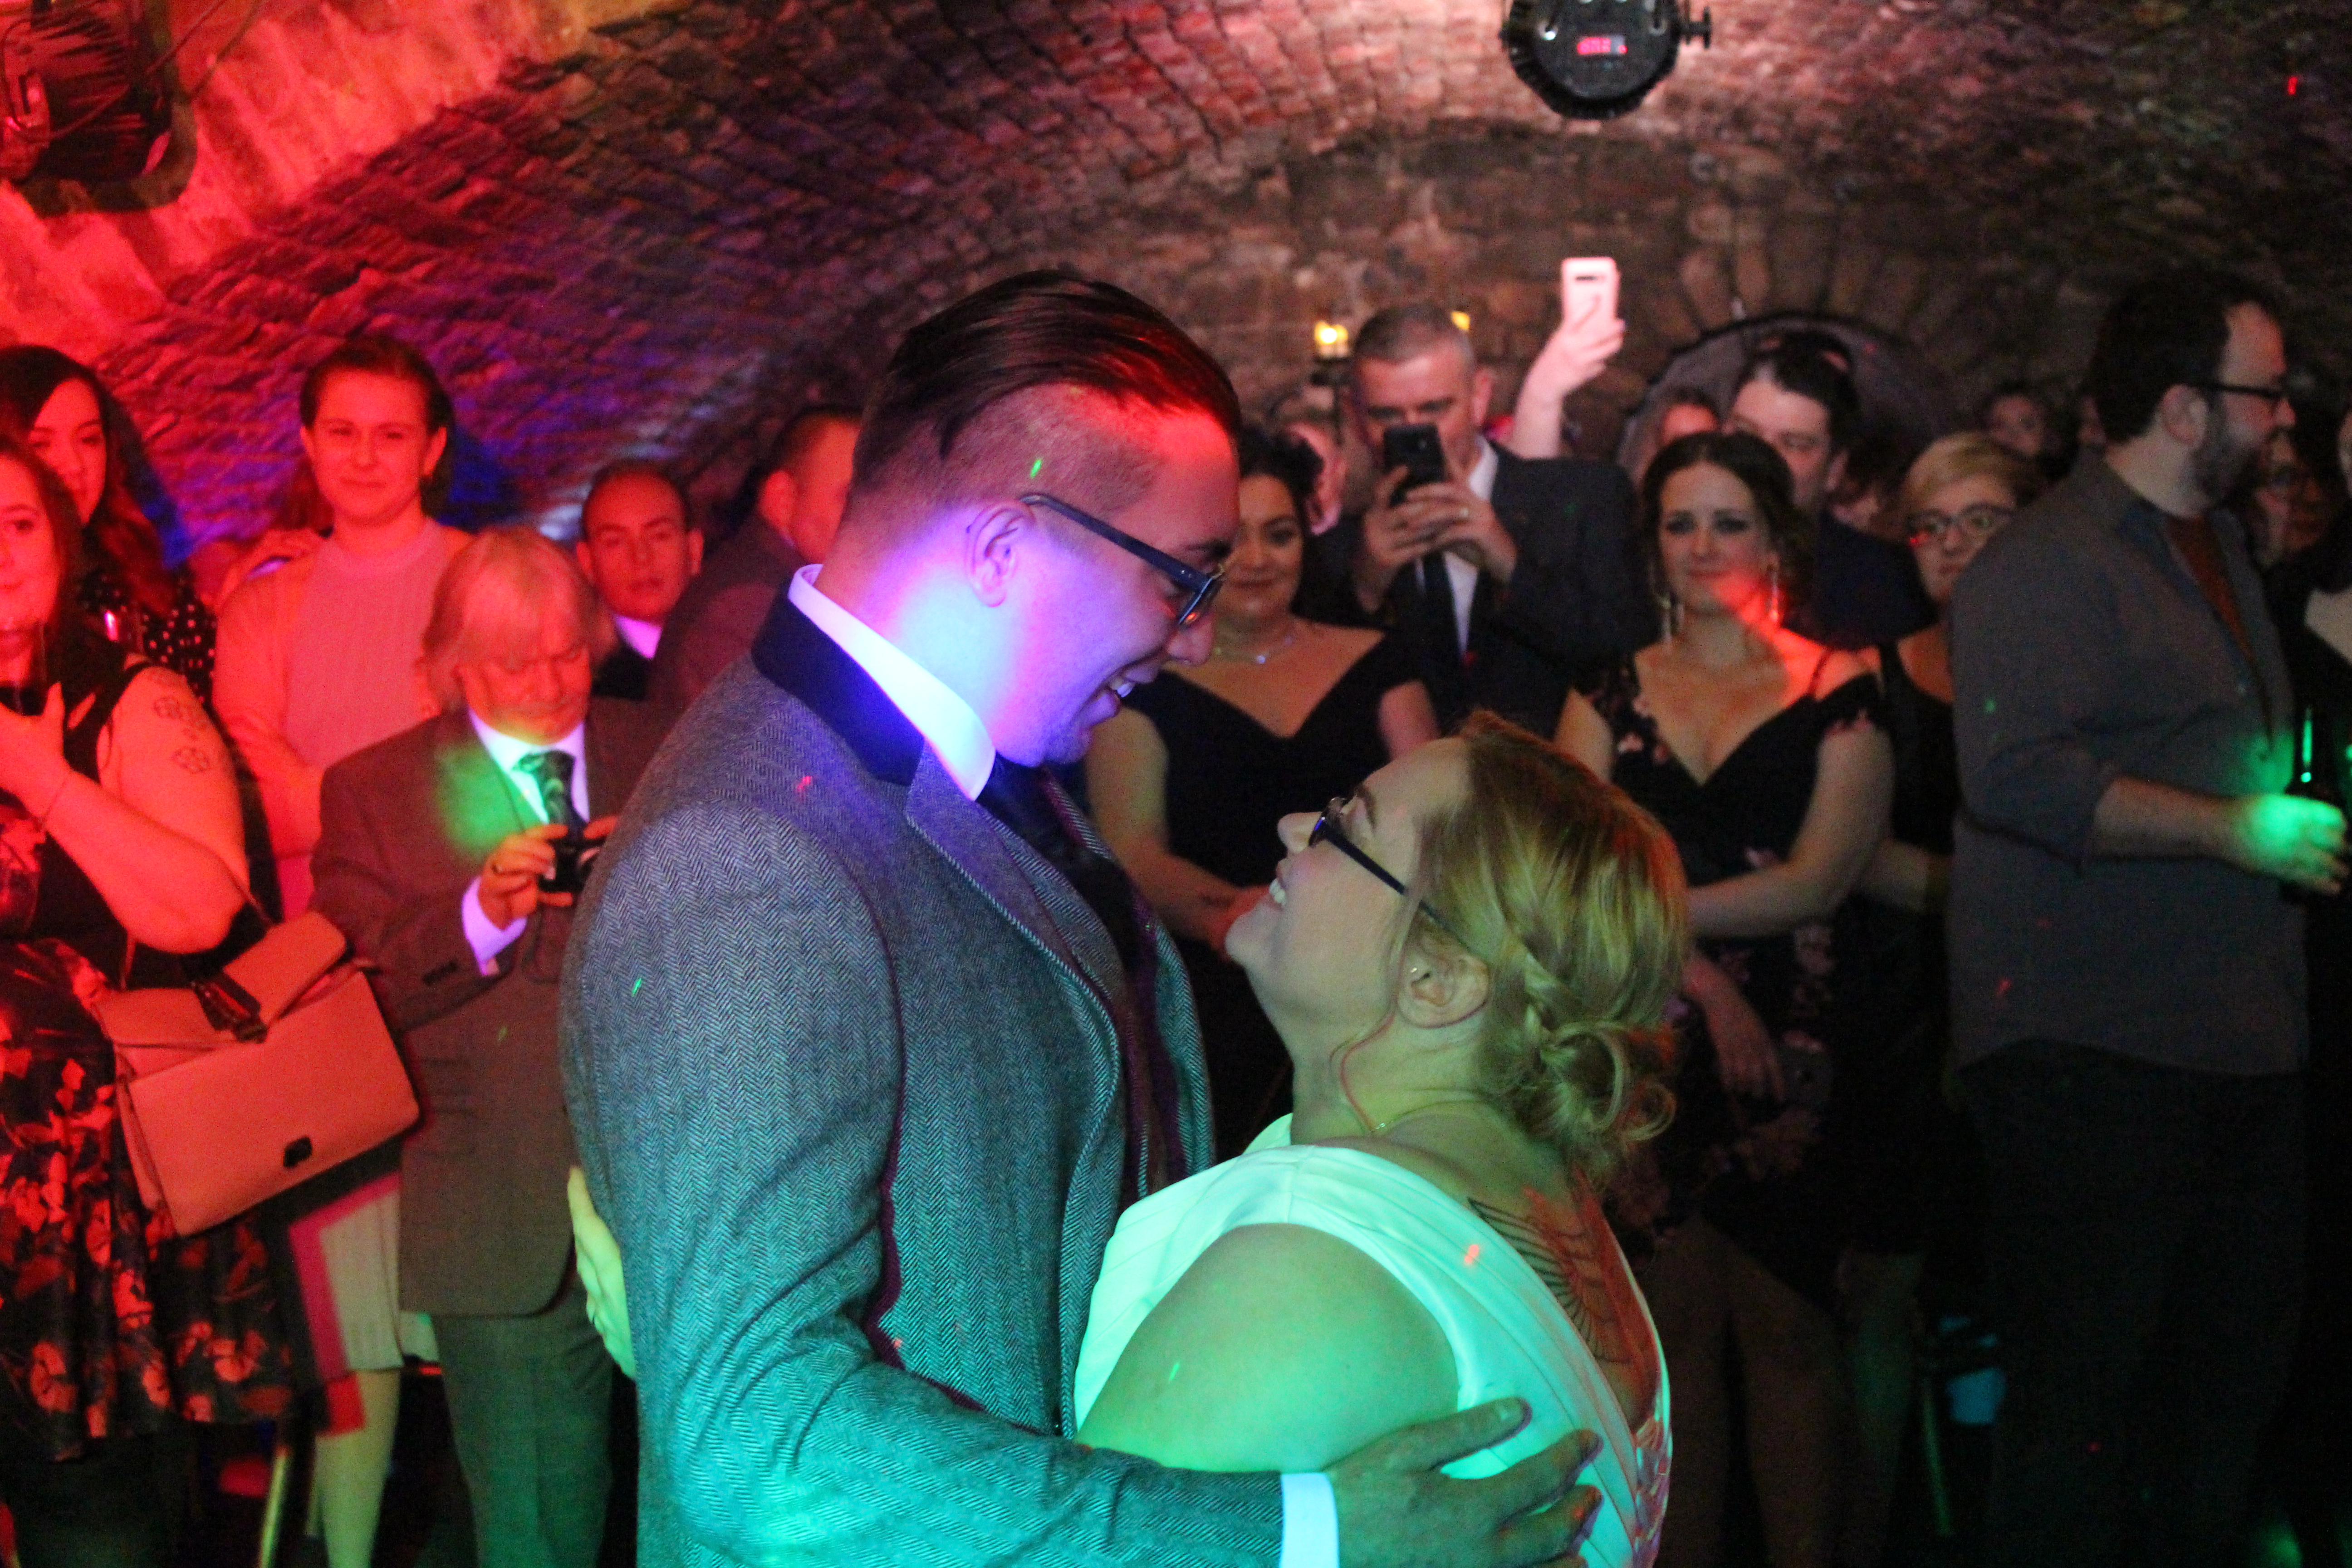 Wedding Disco at Marlin’s Wynd, Edinburgh